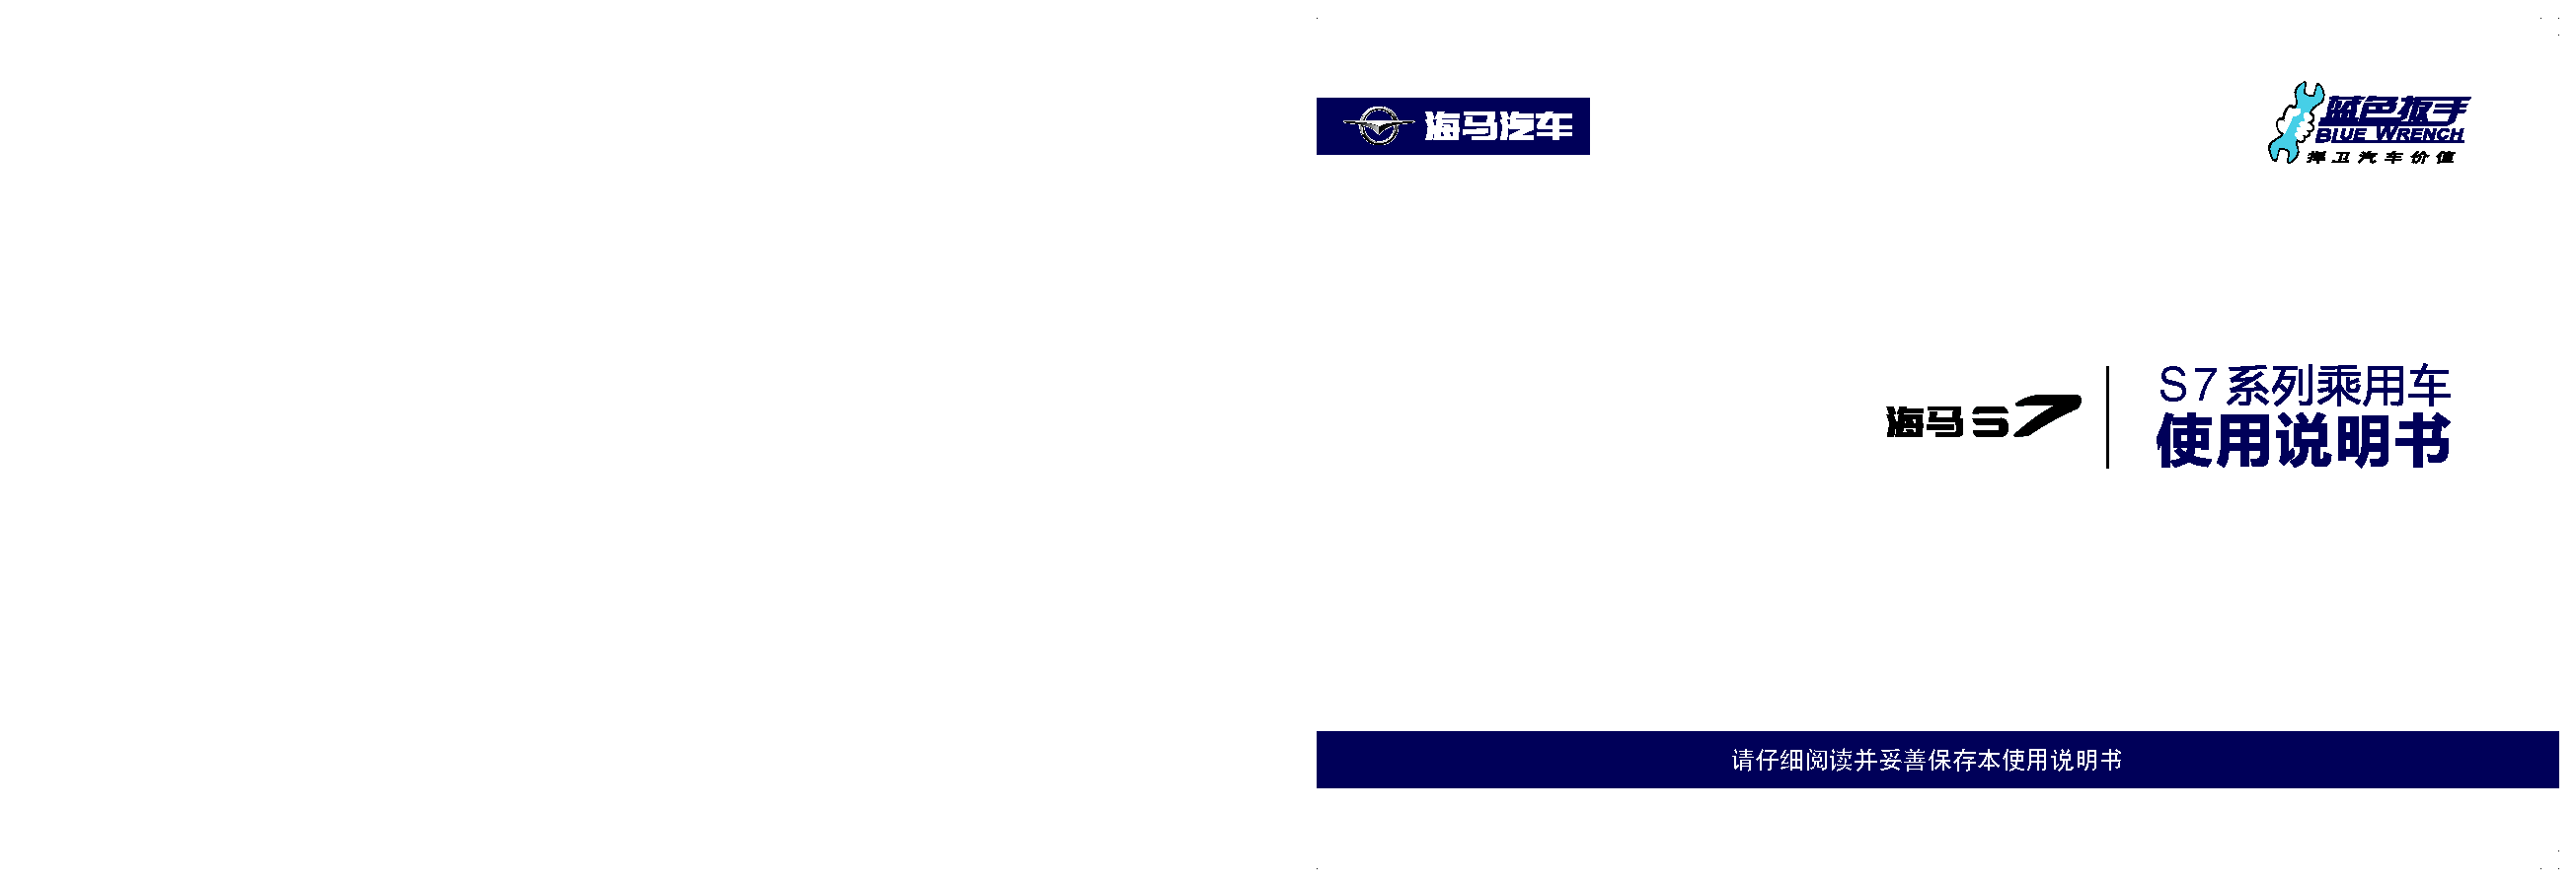 海马 Haima S7 2016 使用说明书 封面